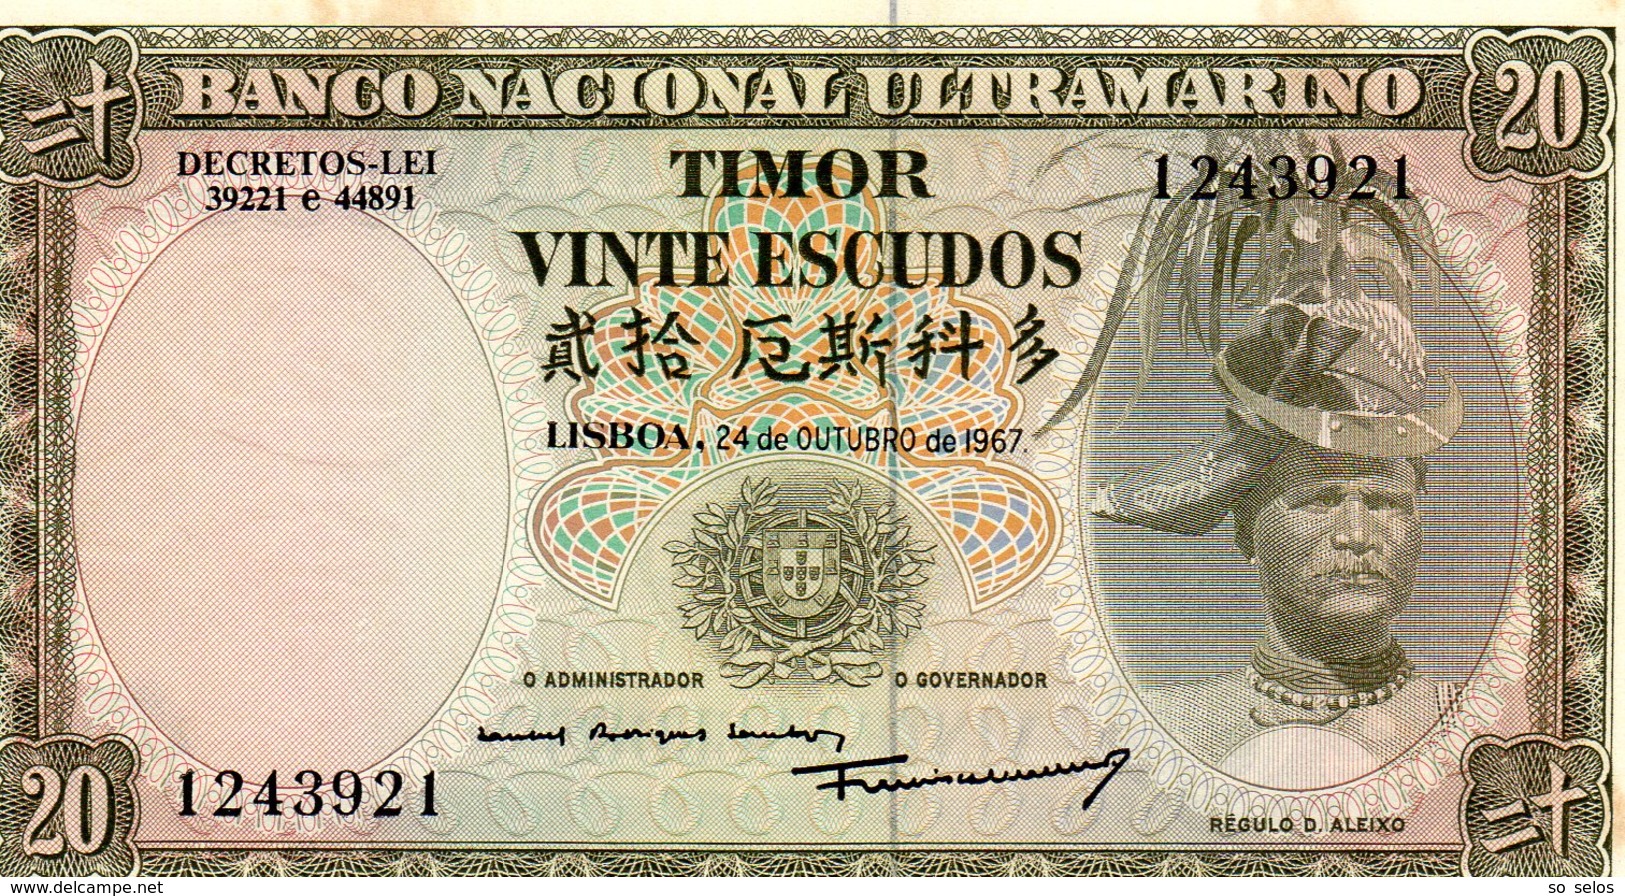 TIMOR     20 ESCUDOS  24/10/1967   Régulo D. Aleixo - Portugal